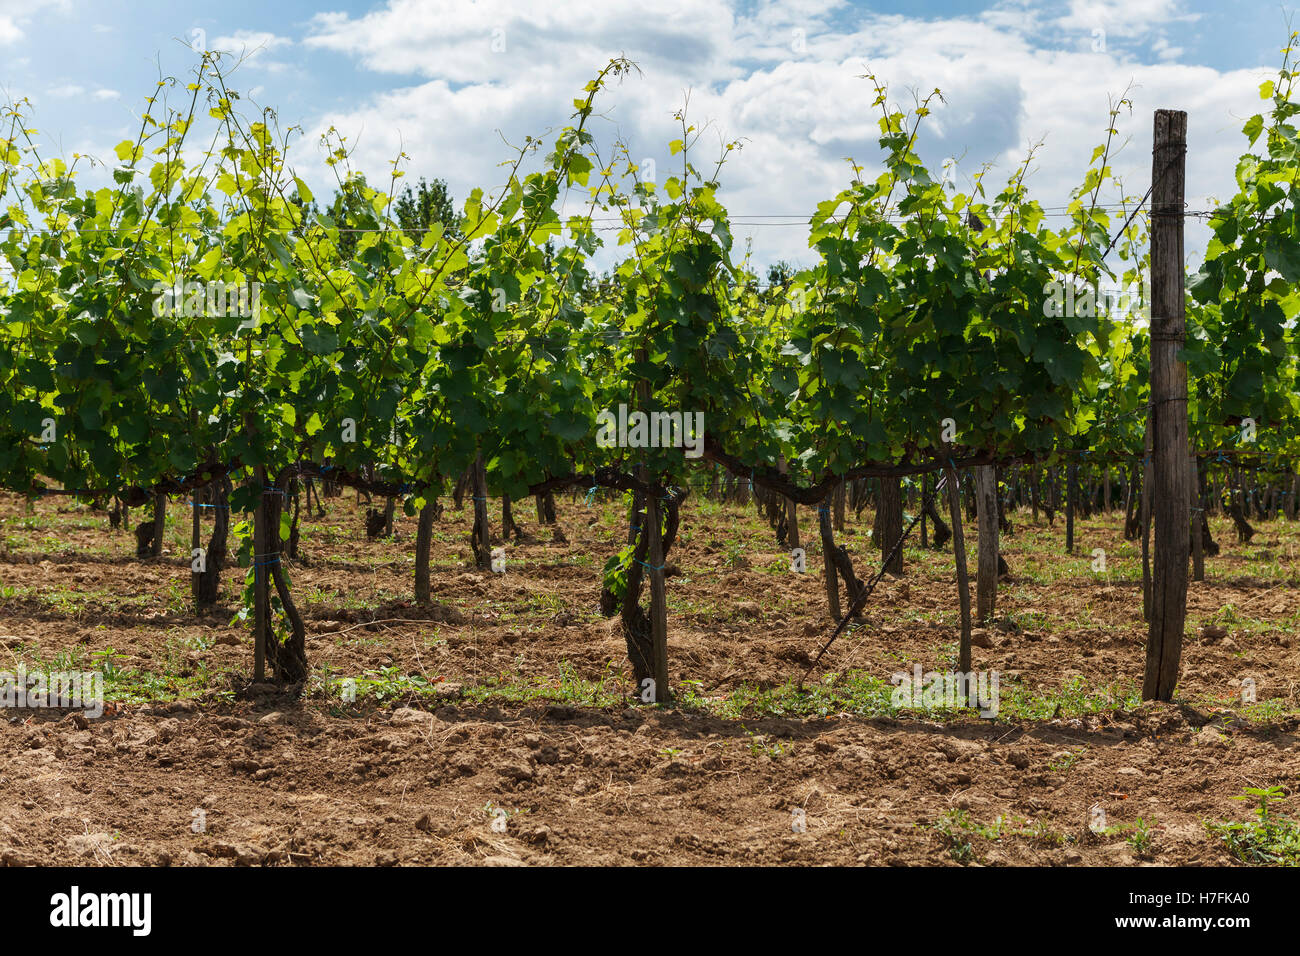 Vigne - viticulture vert sous ciel nuageux, Tokaj, Hongrie, Europe Banque D'Images